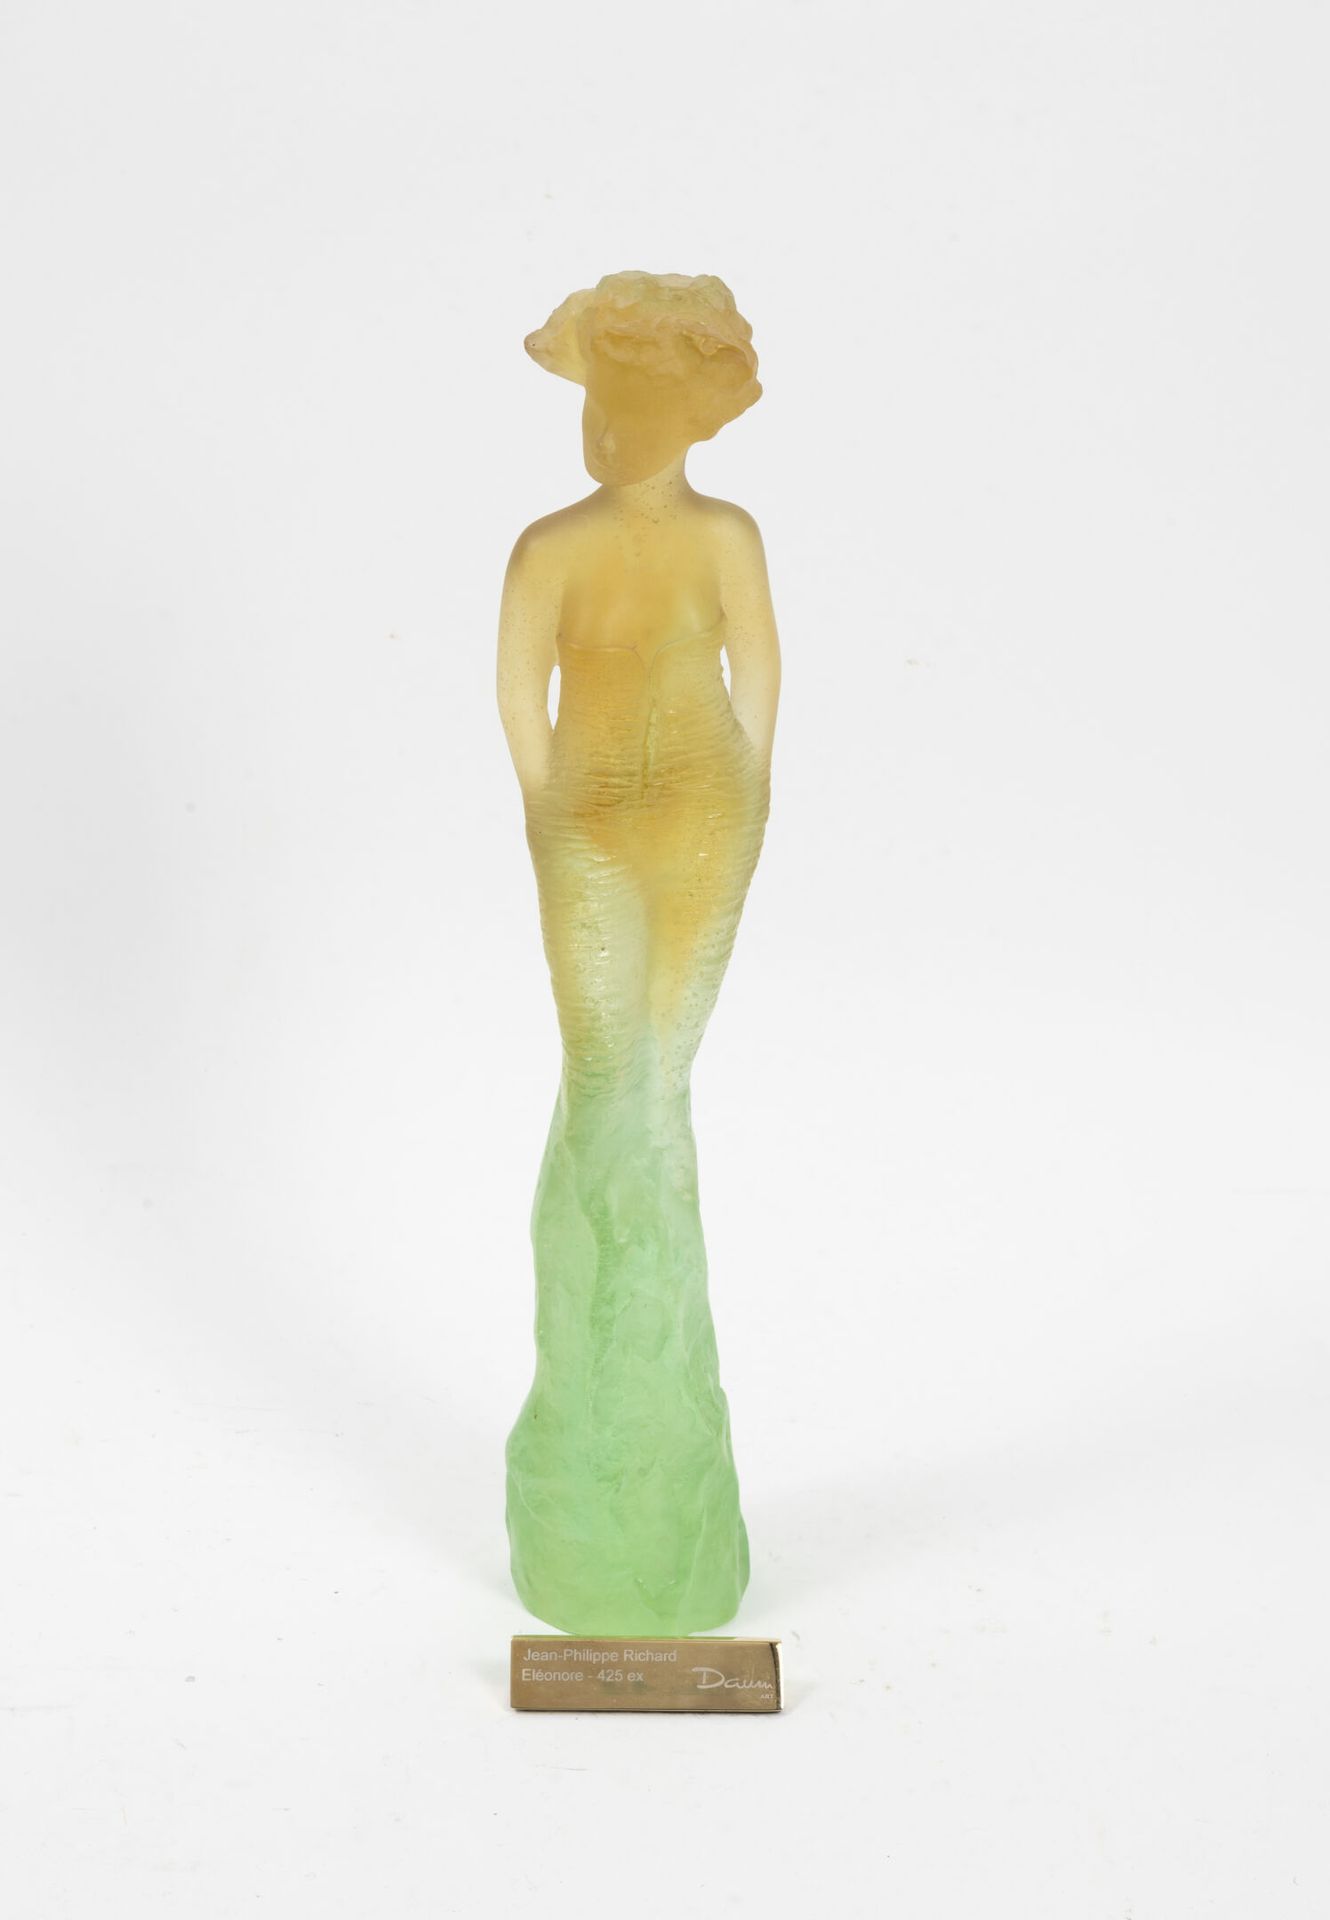 Jean Philippe RICHARD (1947) pour DAUM Éléonore.

Sculpture en pâte de verre jau&hellip;